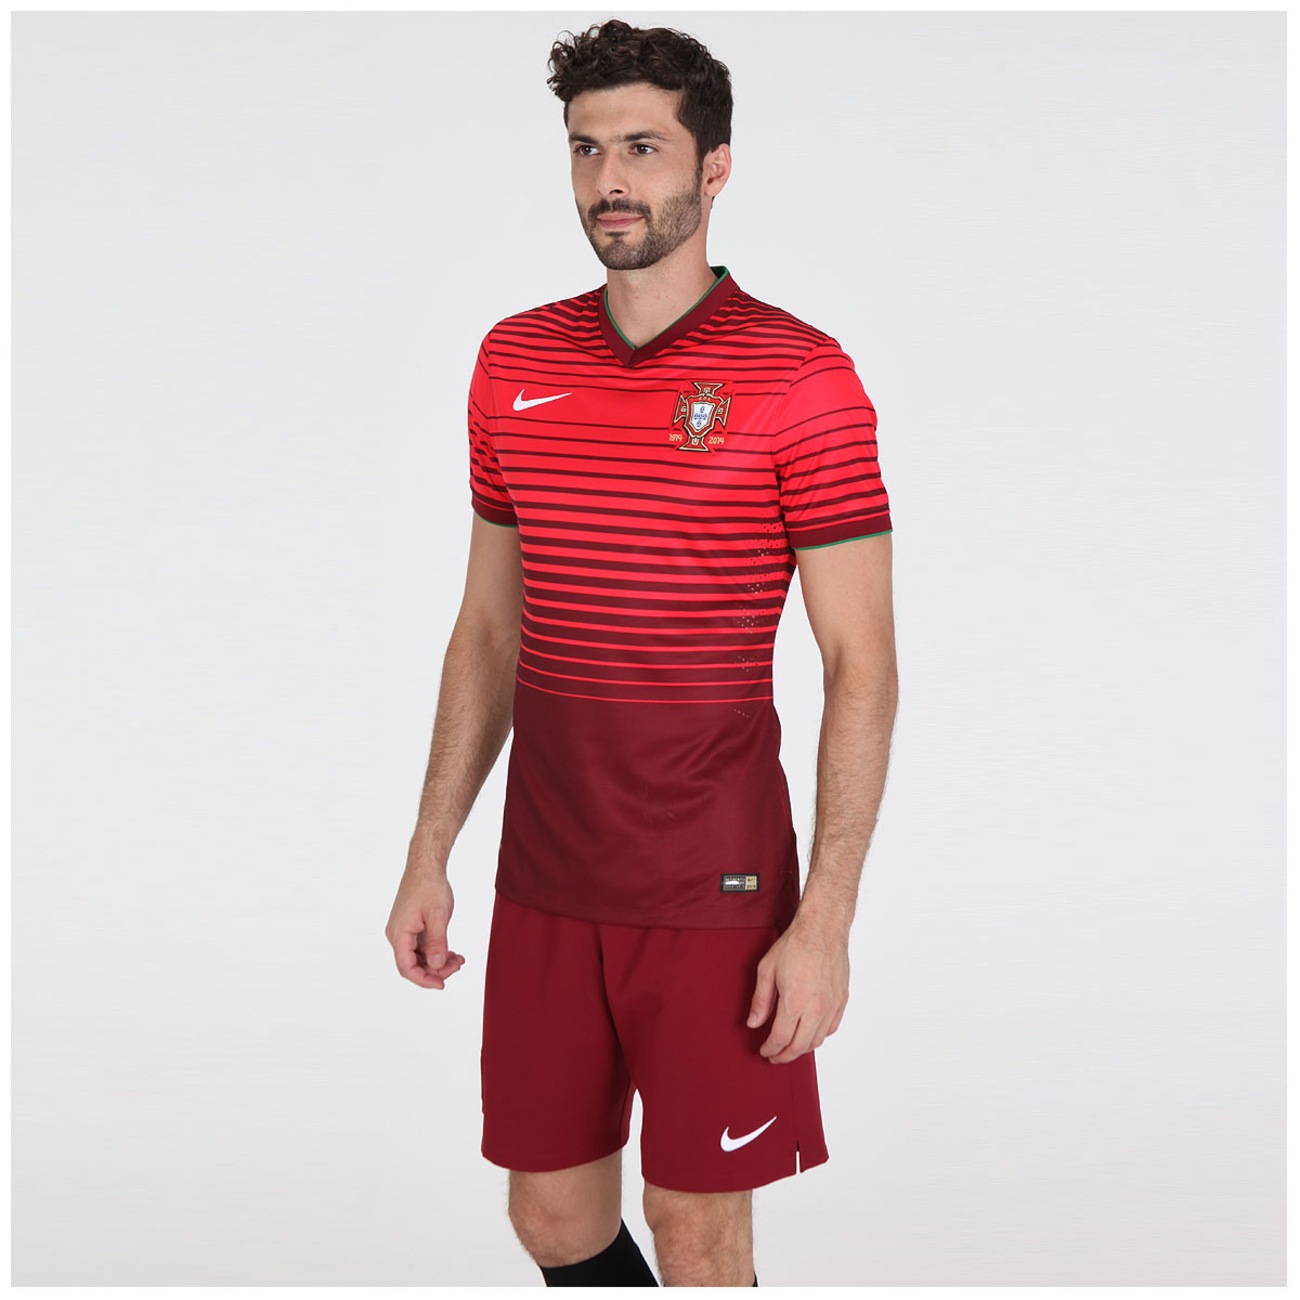 Pompeii Menda City cool Camisa Nike Seleção Portugal I s/n 2014 - Jogador - Centauro